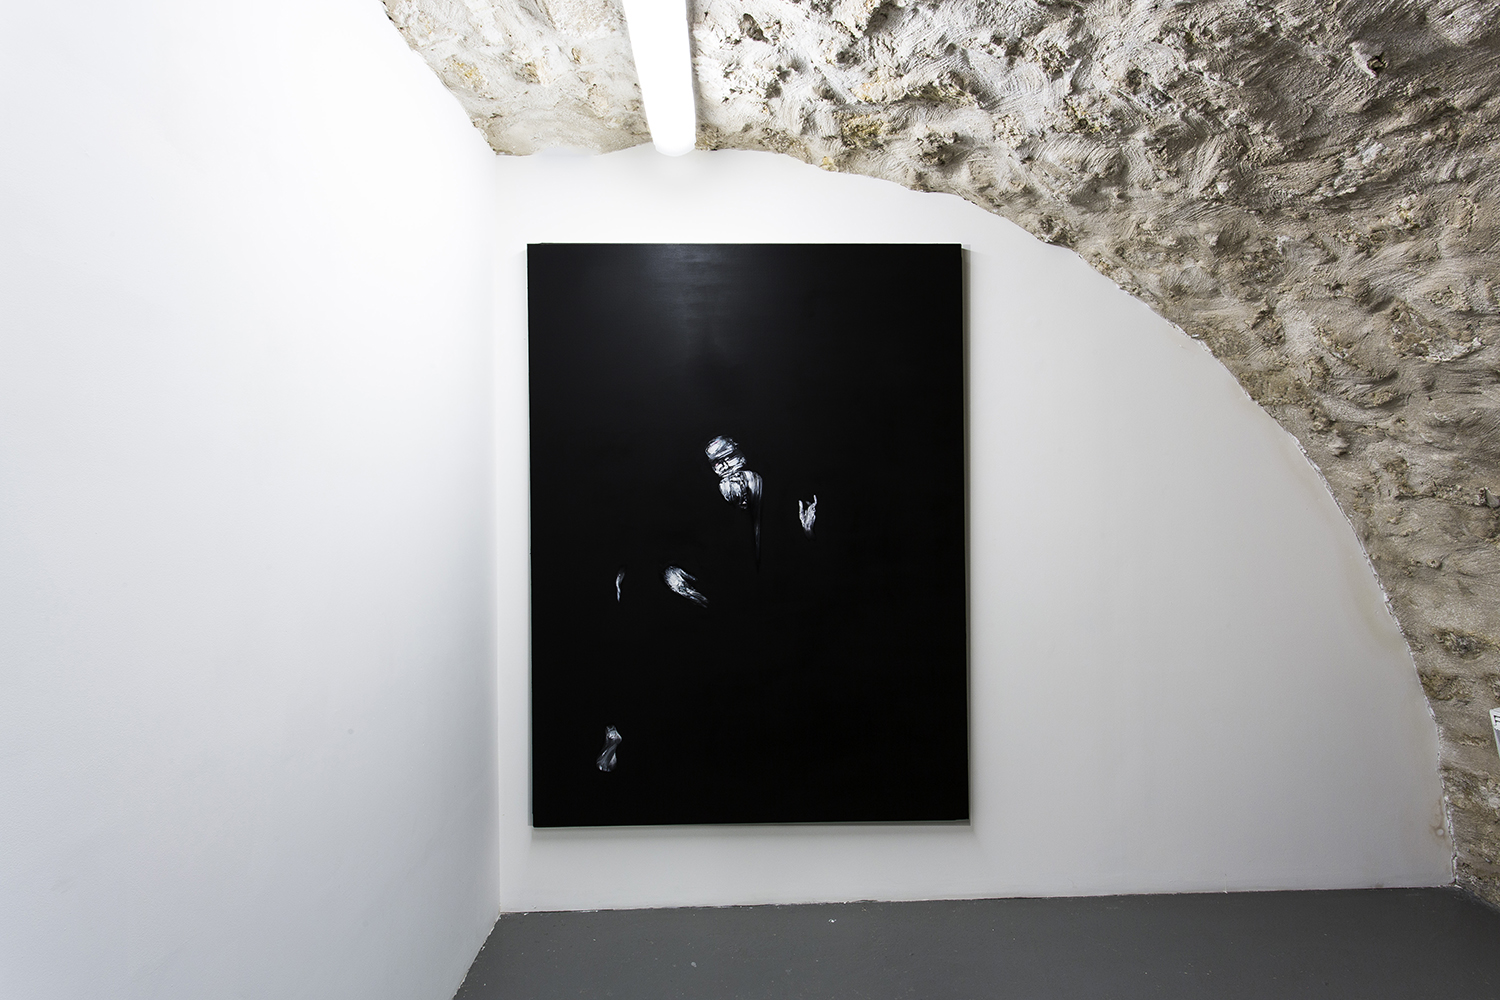 Lorenzo Puglisi, Giove ed Io, 2015, oil on canvas, 200 x 150 cm